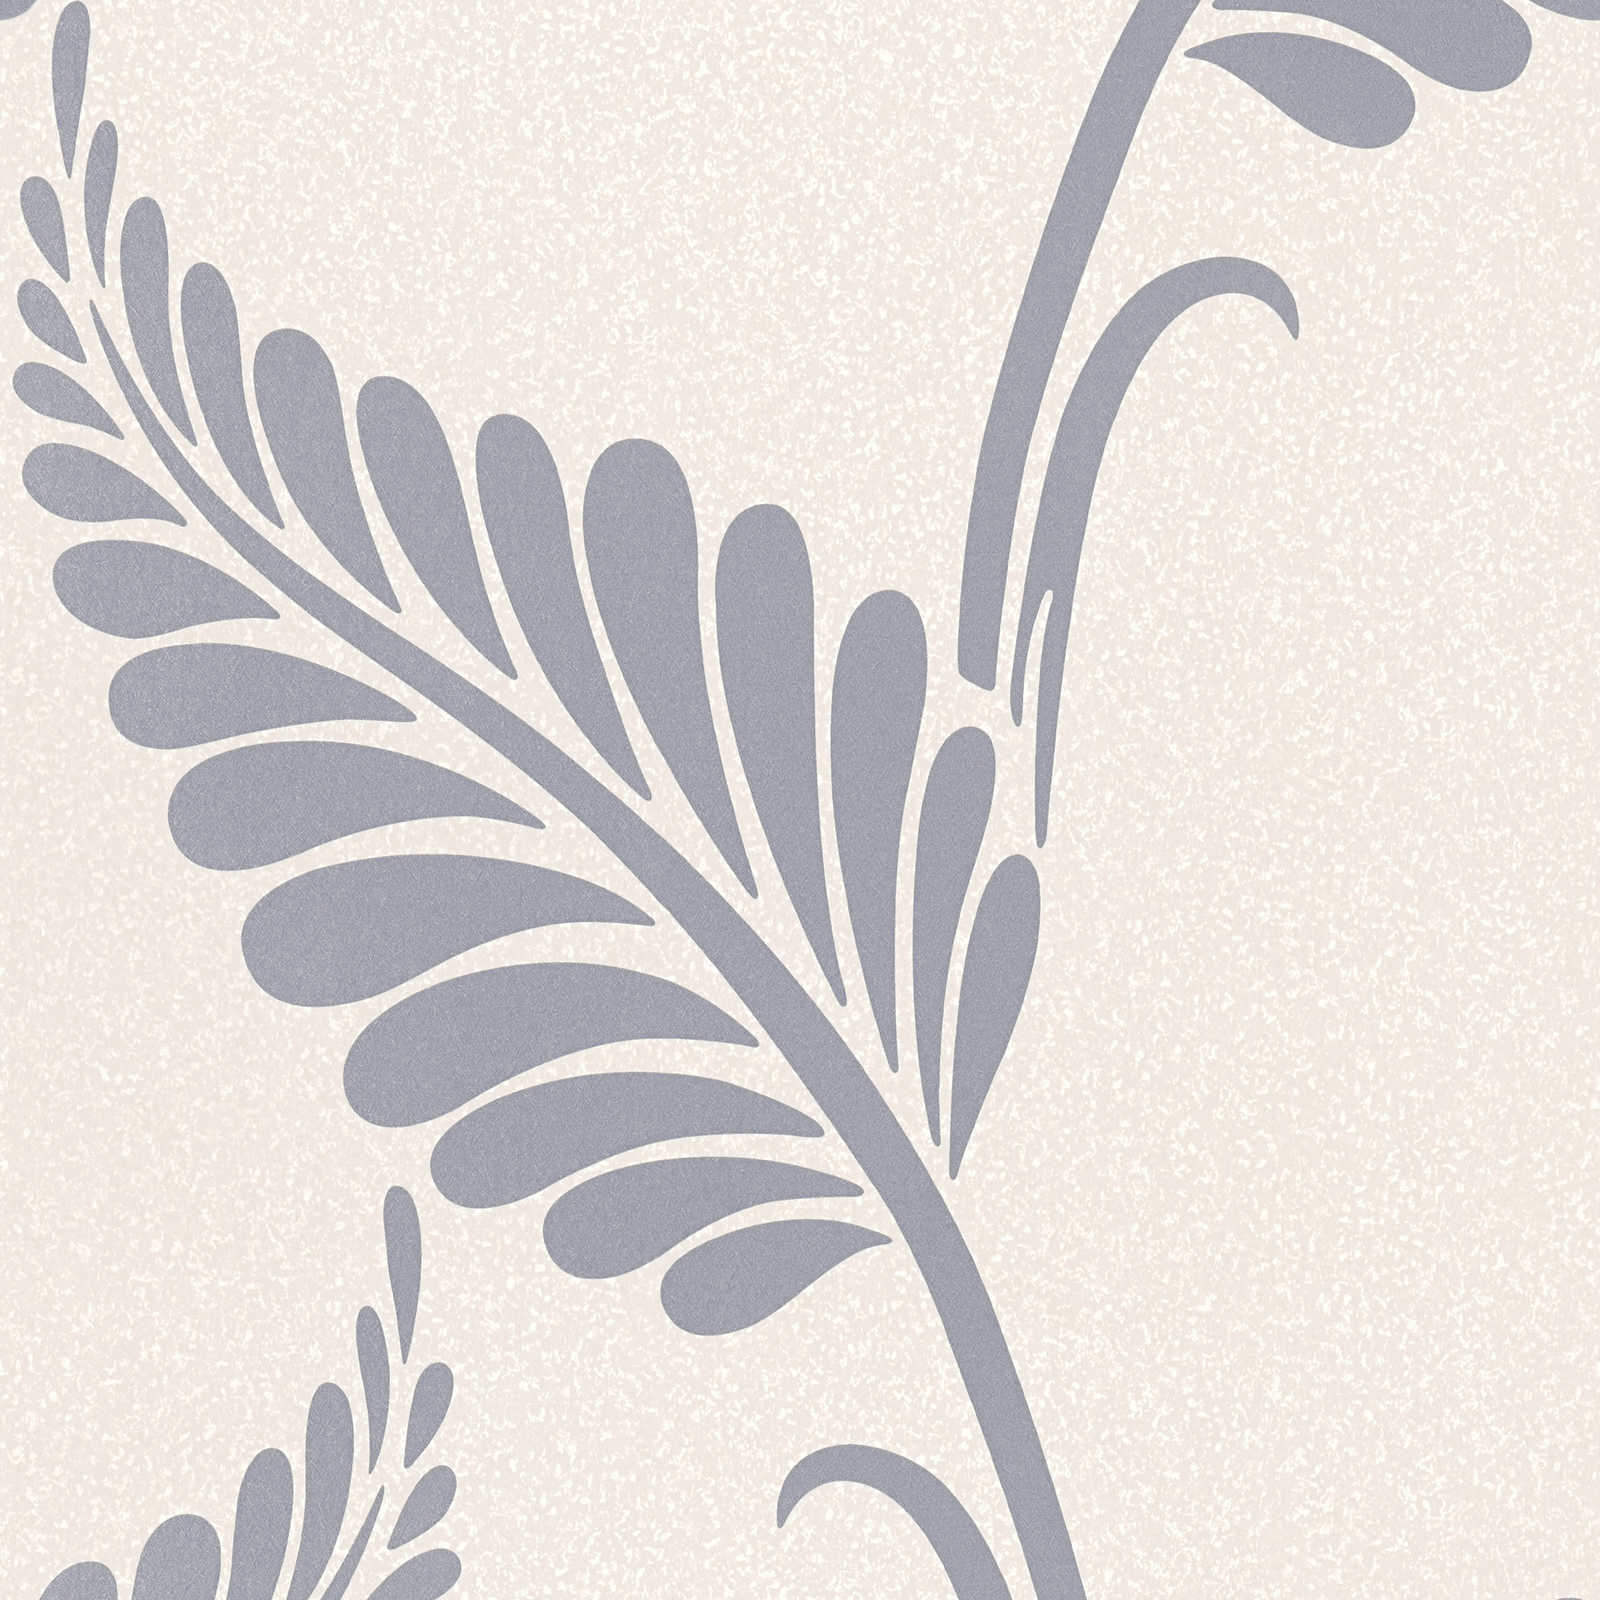 Papiertapete mit Blättern im floralen Stil glänzend – Greige, Silber
